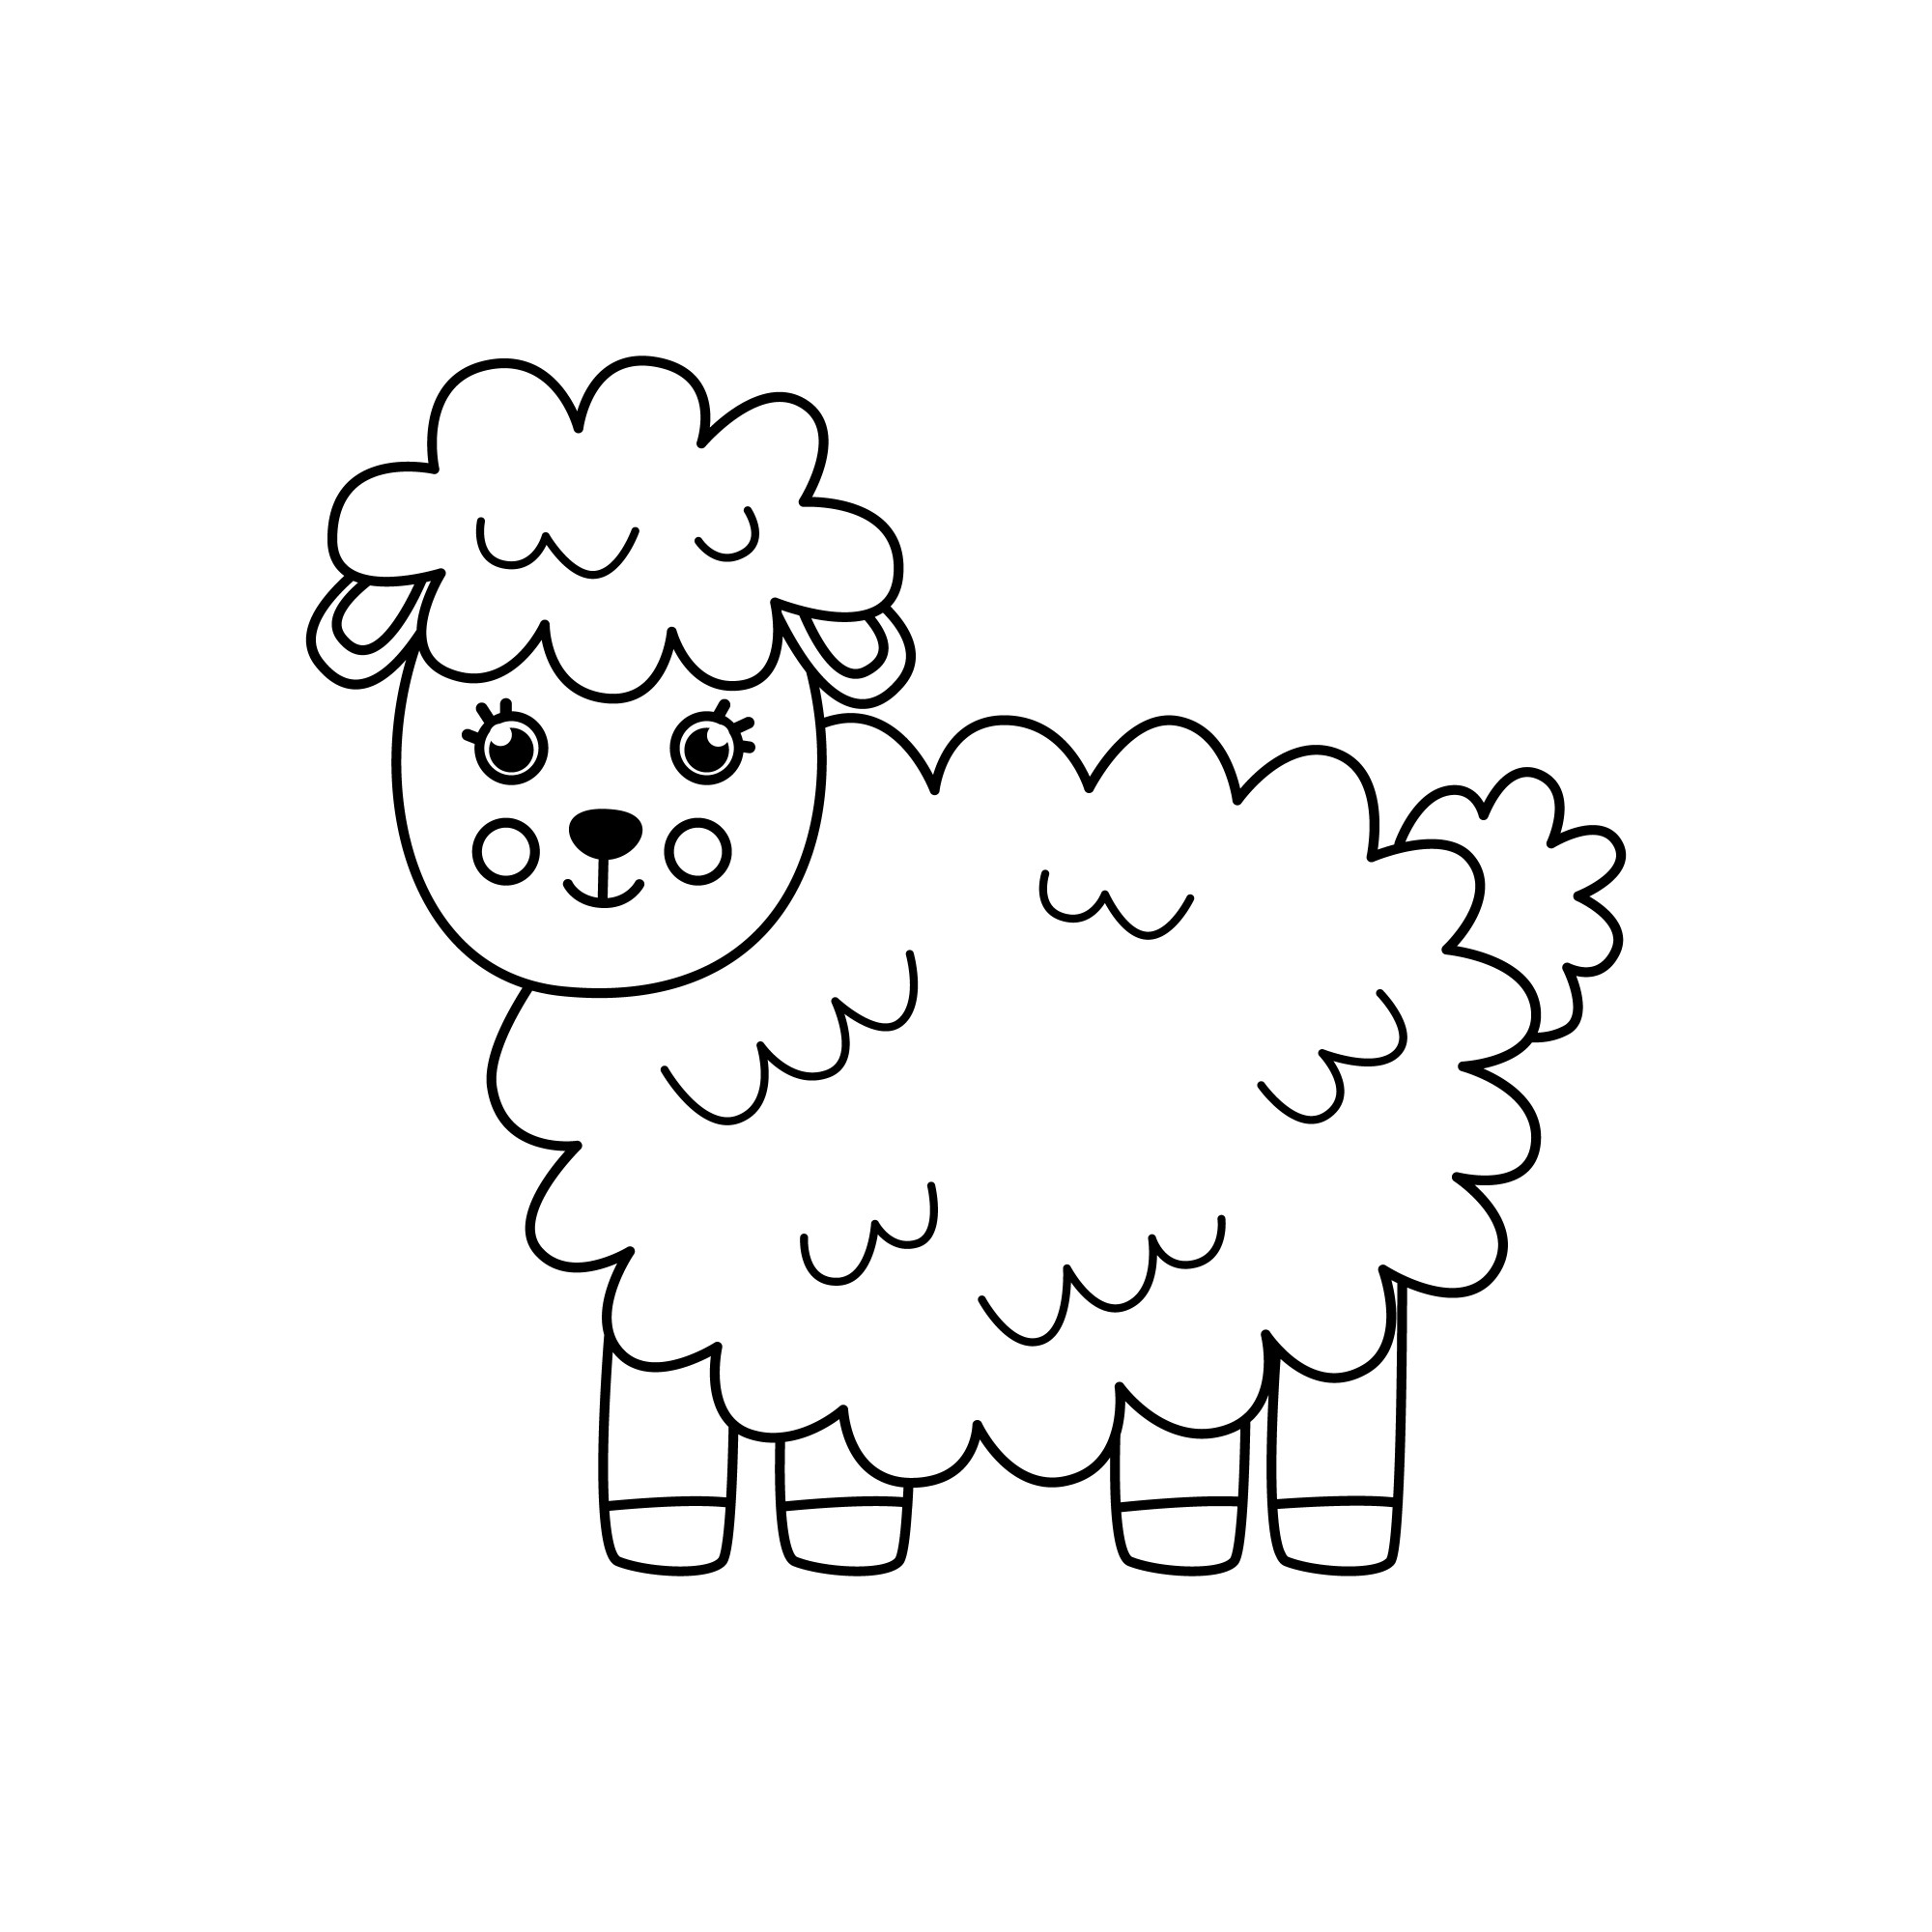 Раскраска для детей: мультяшная овца с густой шерстью